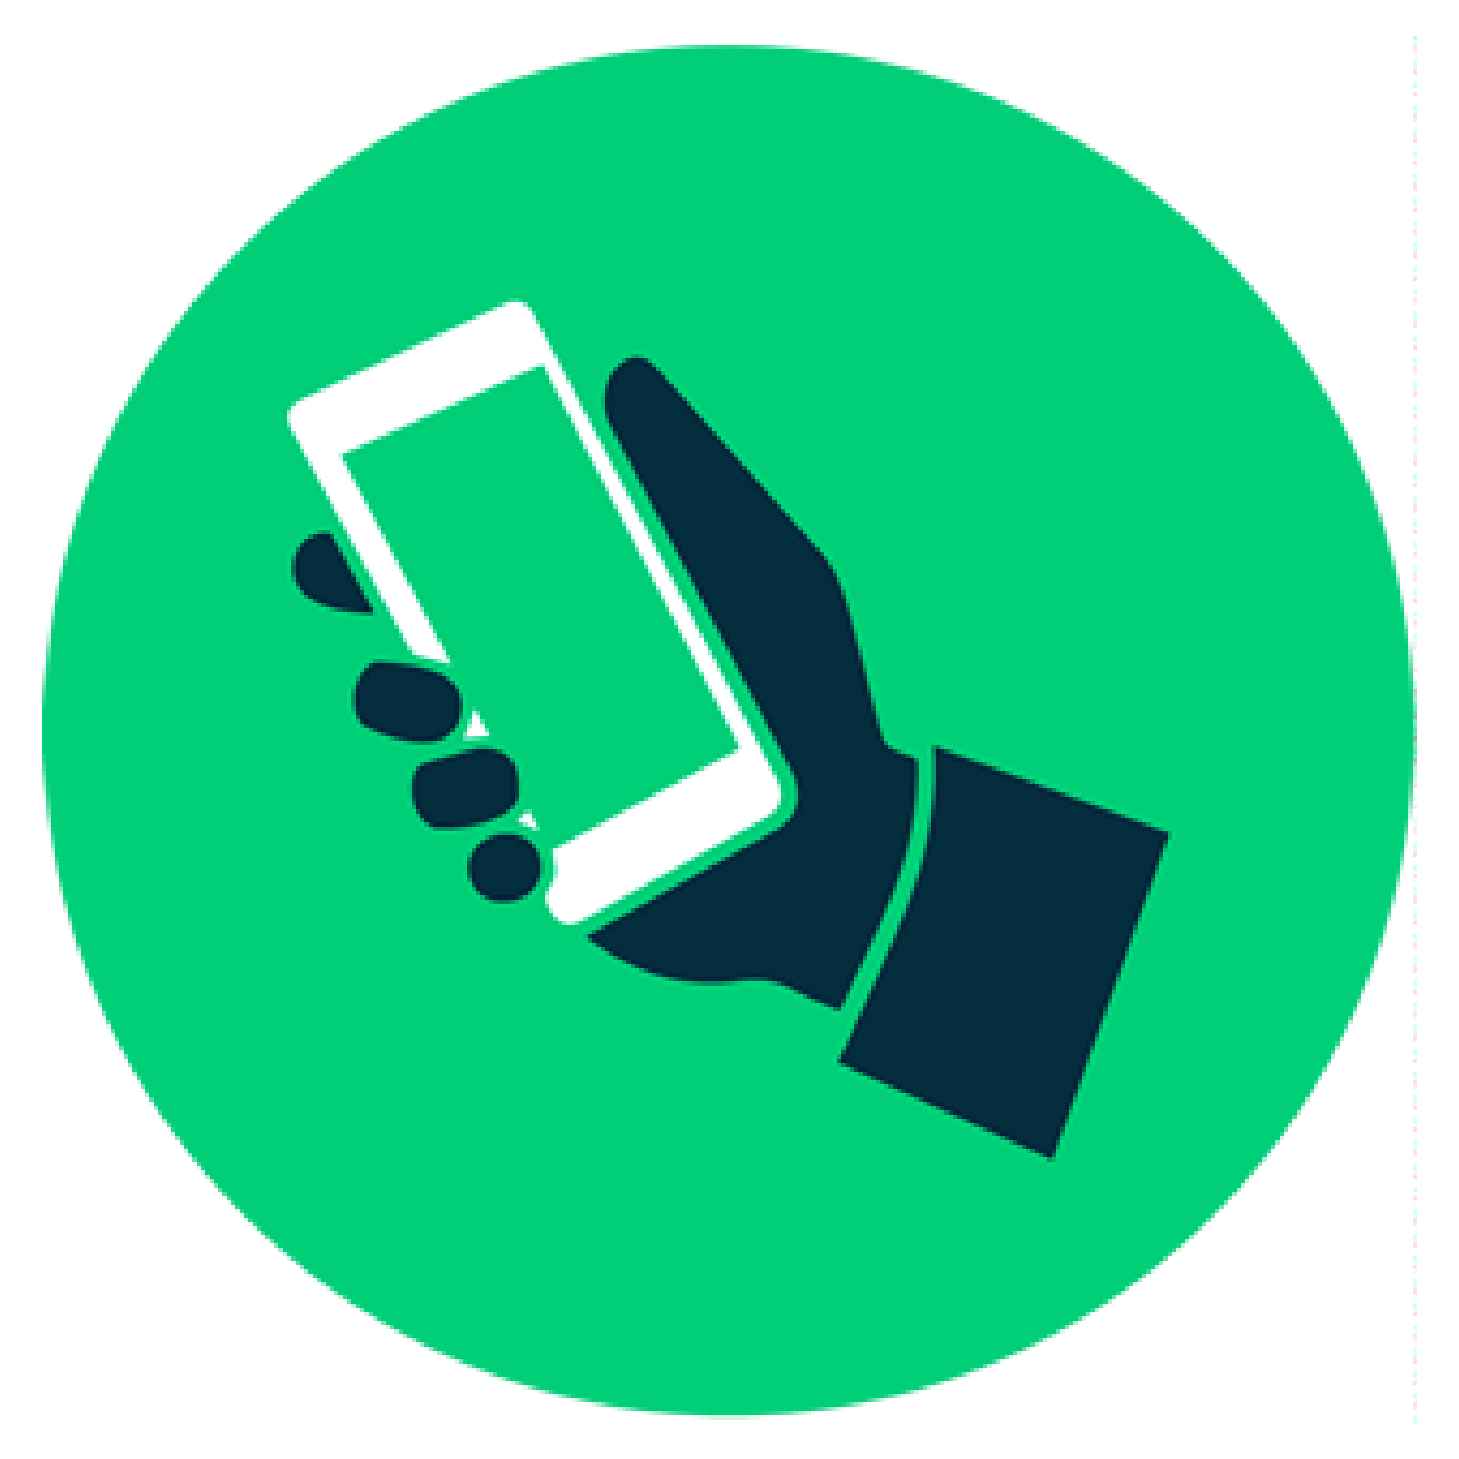 Icono verde de un mano y celular